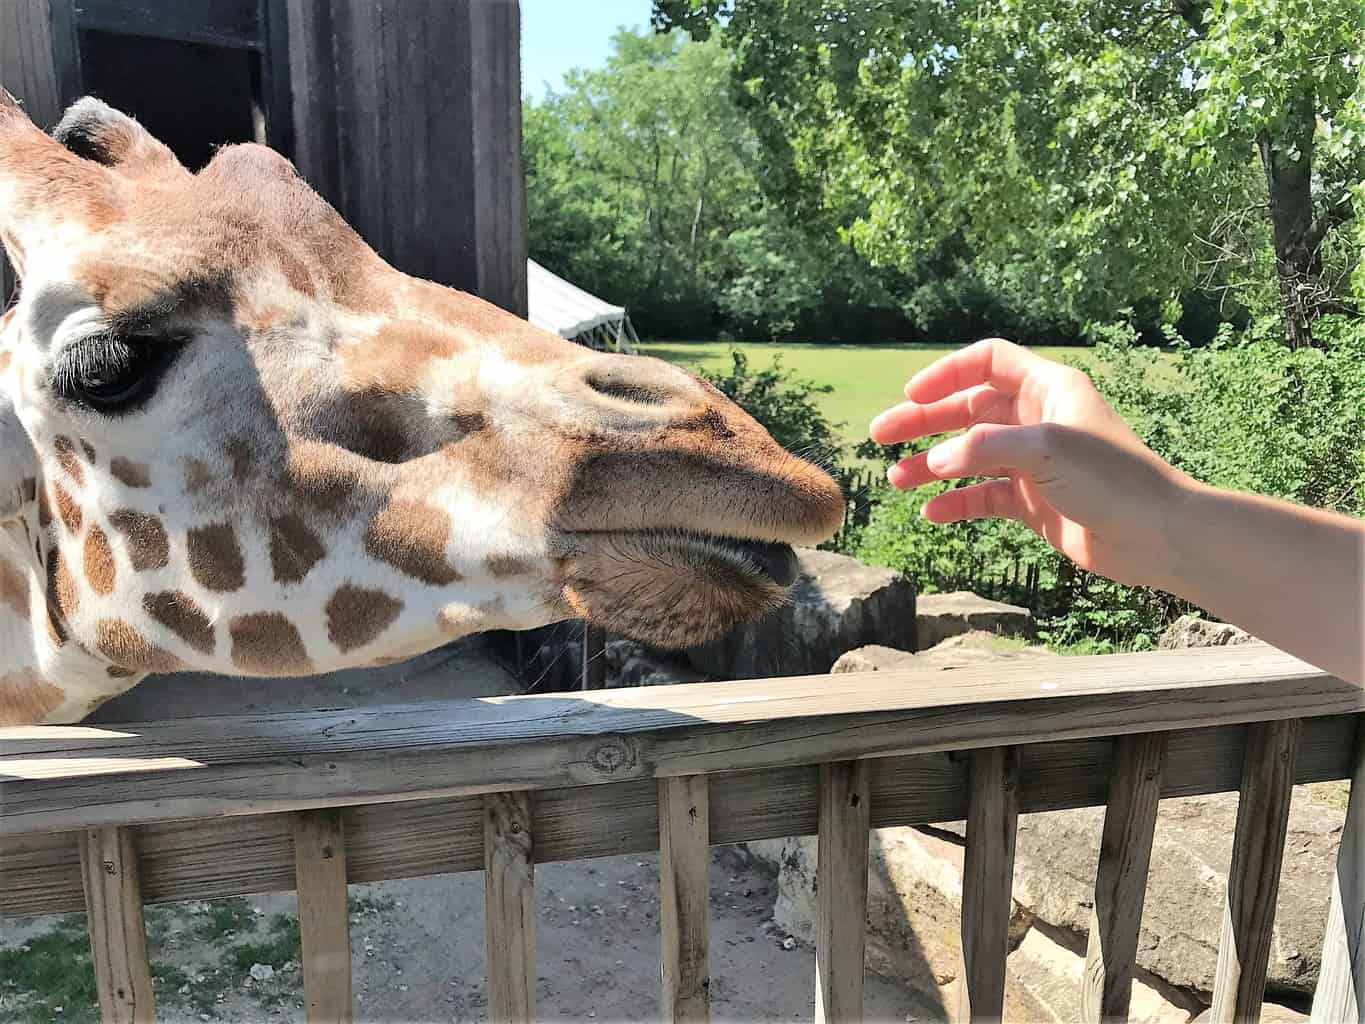 Giraffe Feeding at Sedgwick County Zoo